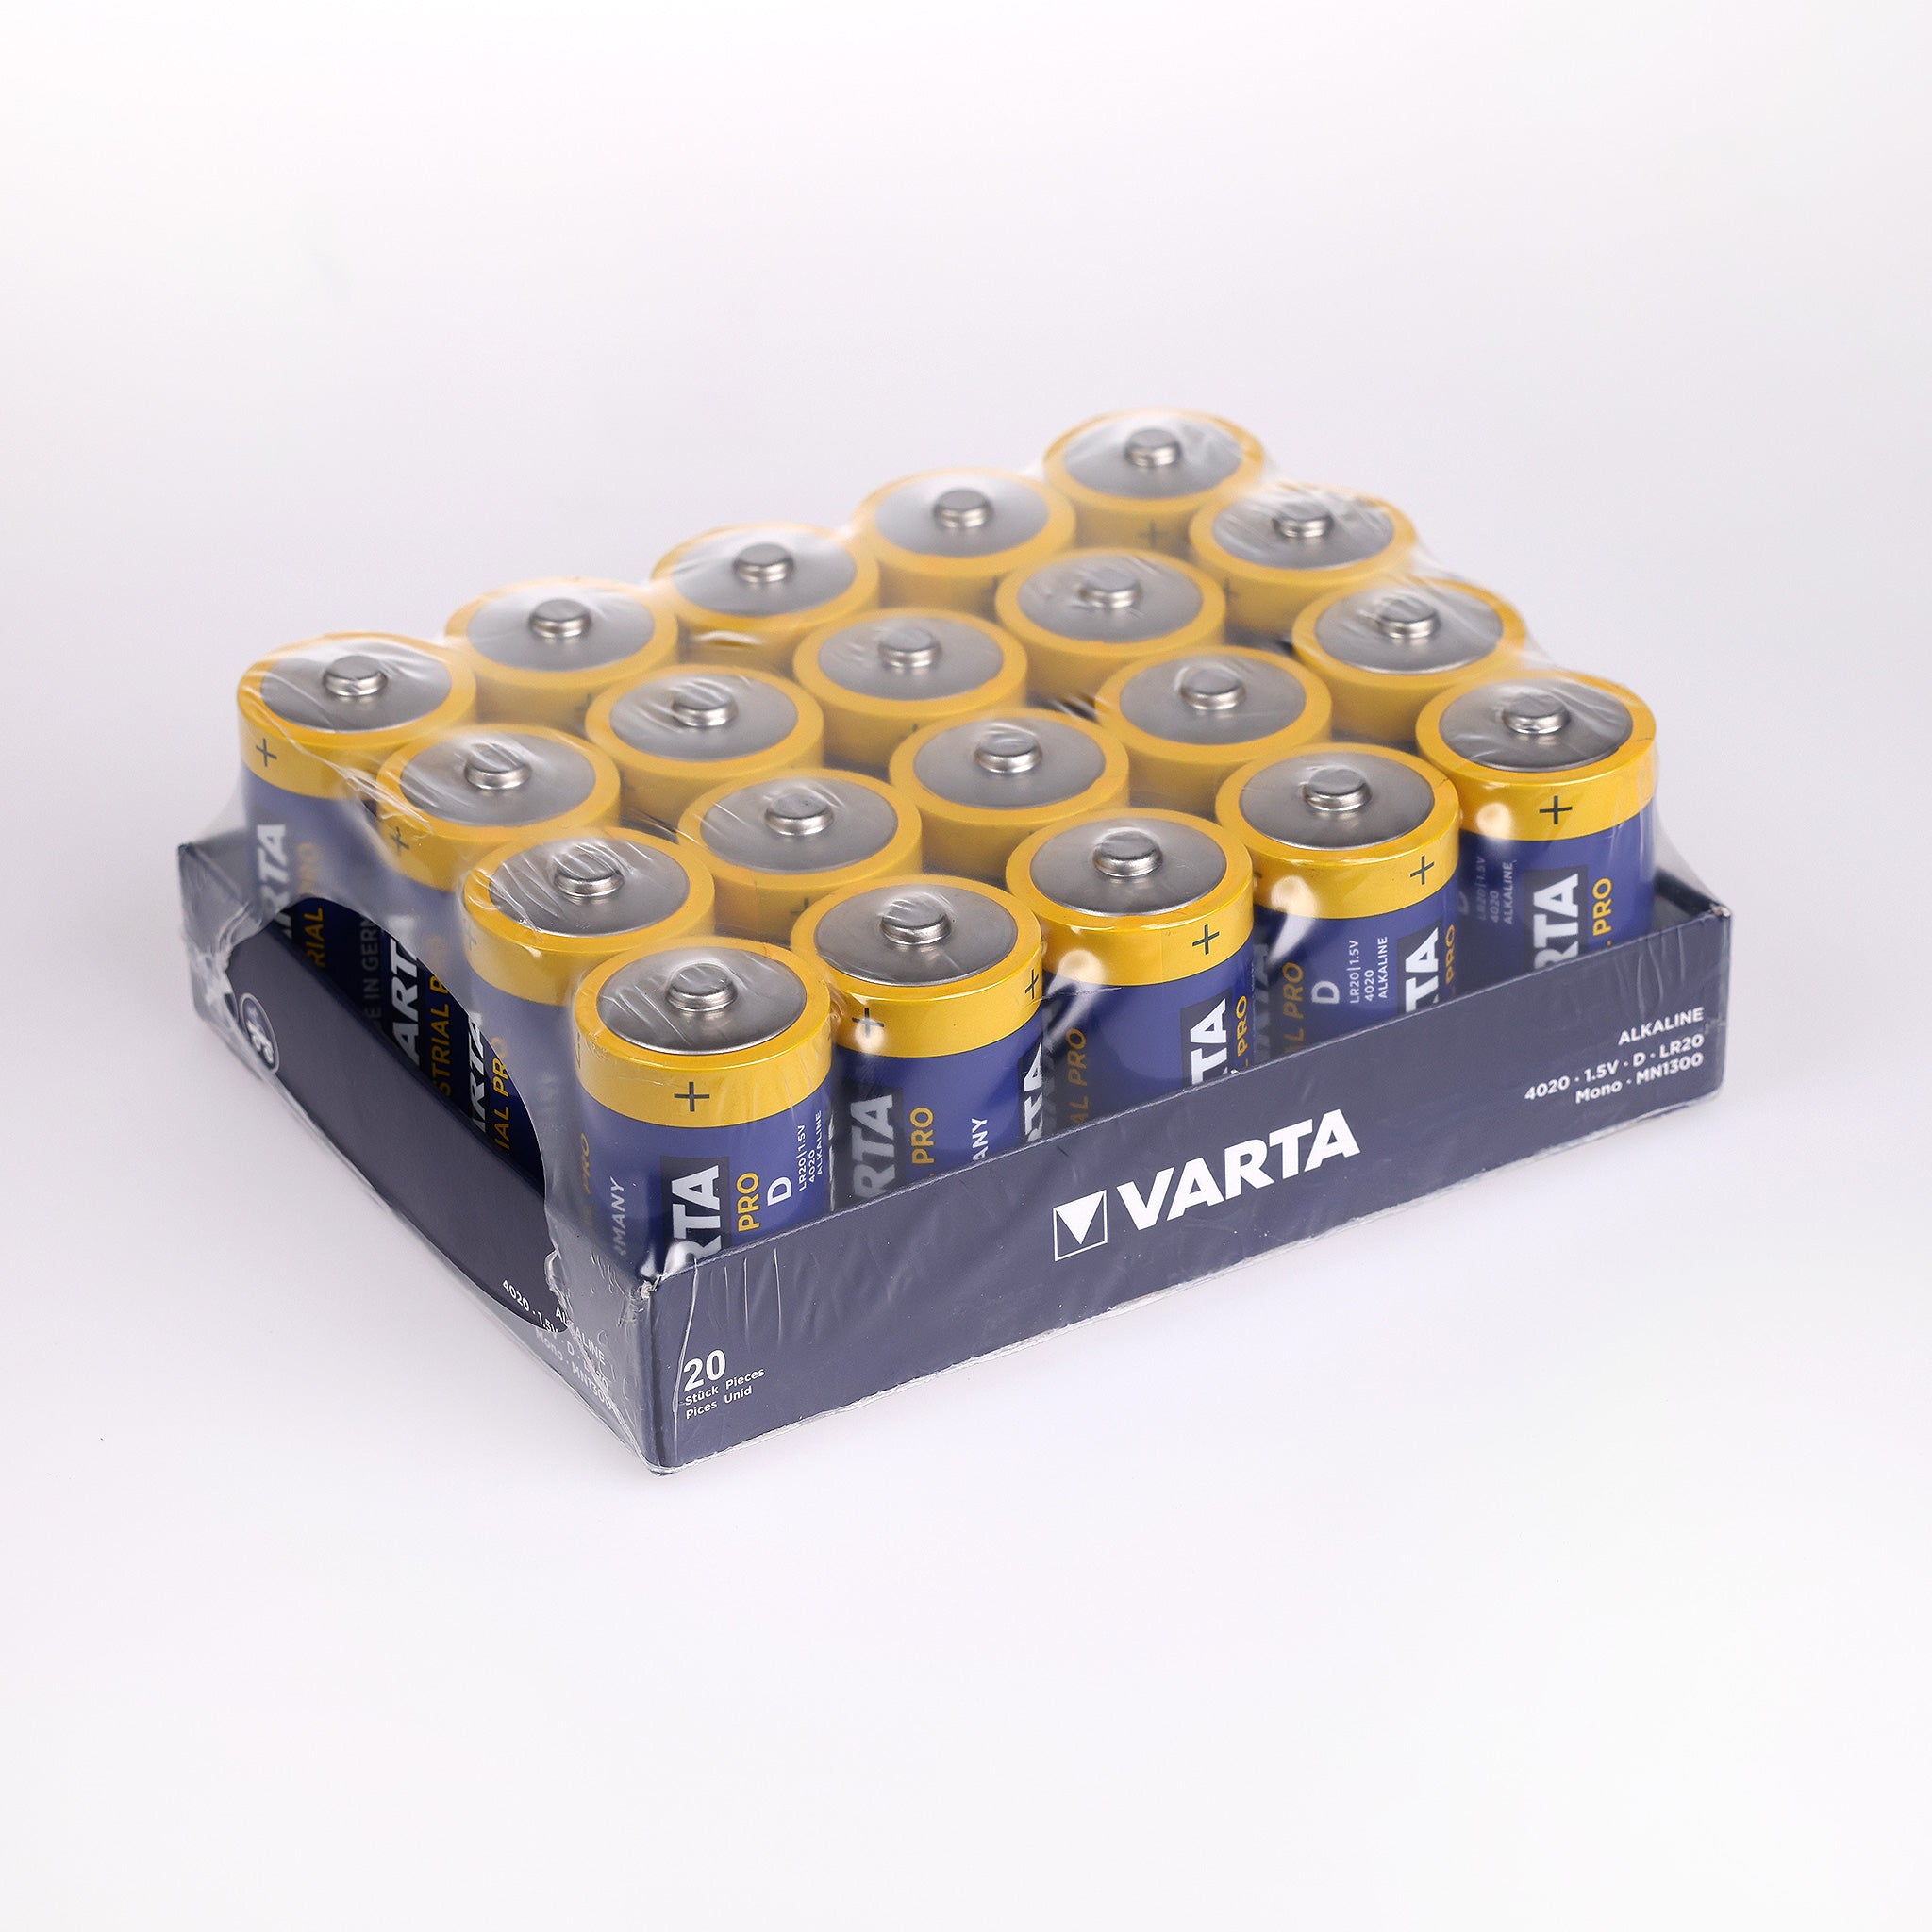 Batterier LR20 type D 1,5V fra Varta. Batterierne fra Varta har en lang levetid. Der leveres 20 batterier af Cares.dk.